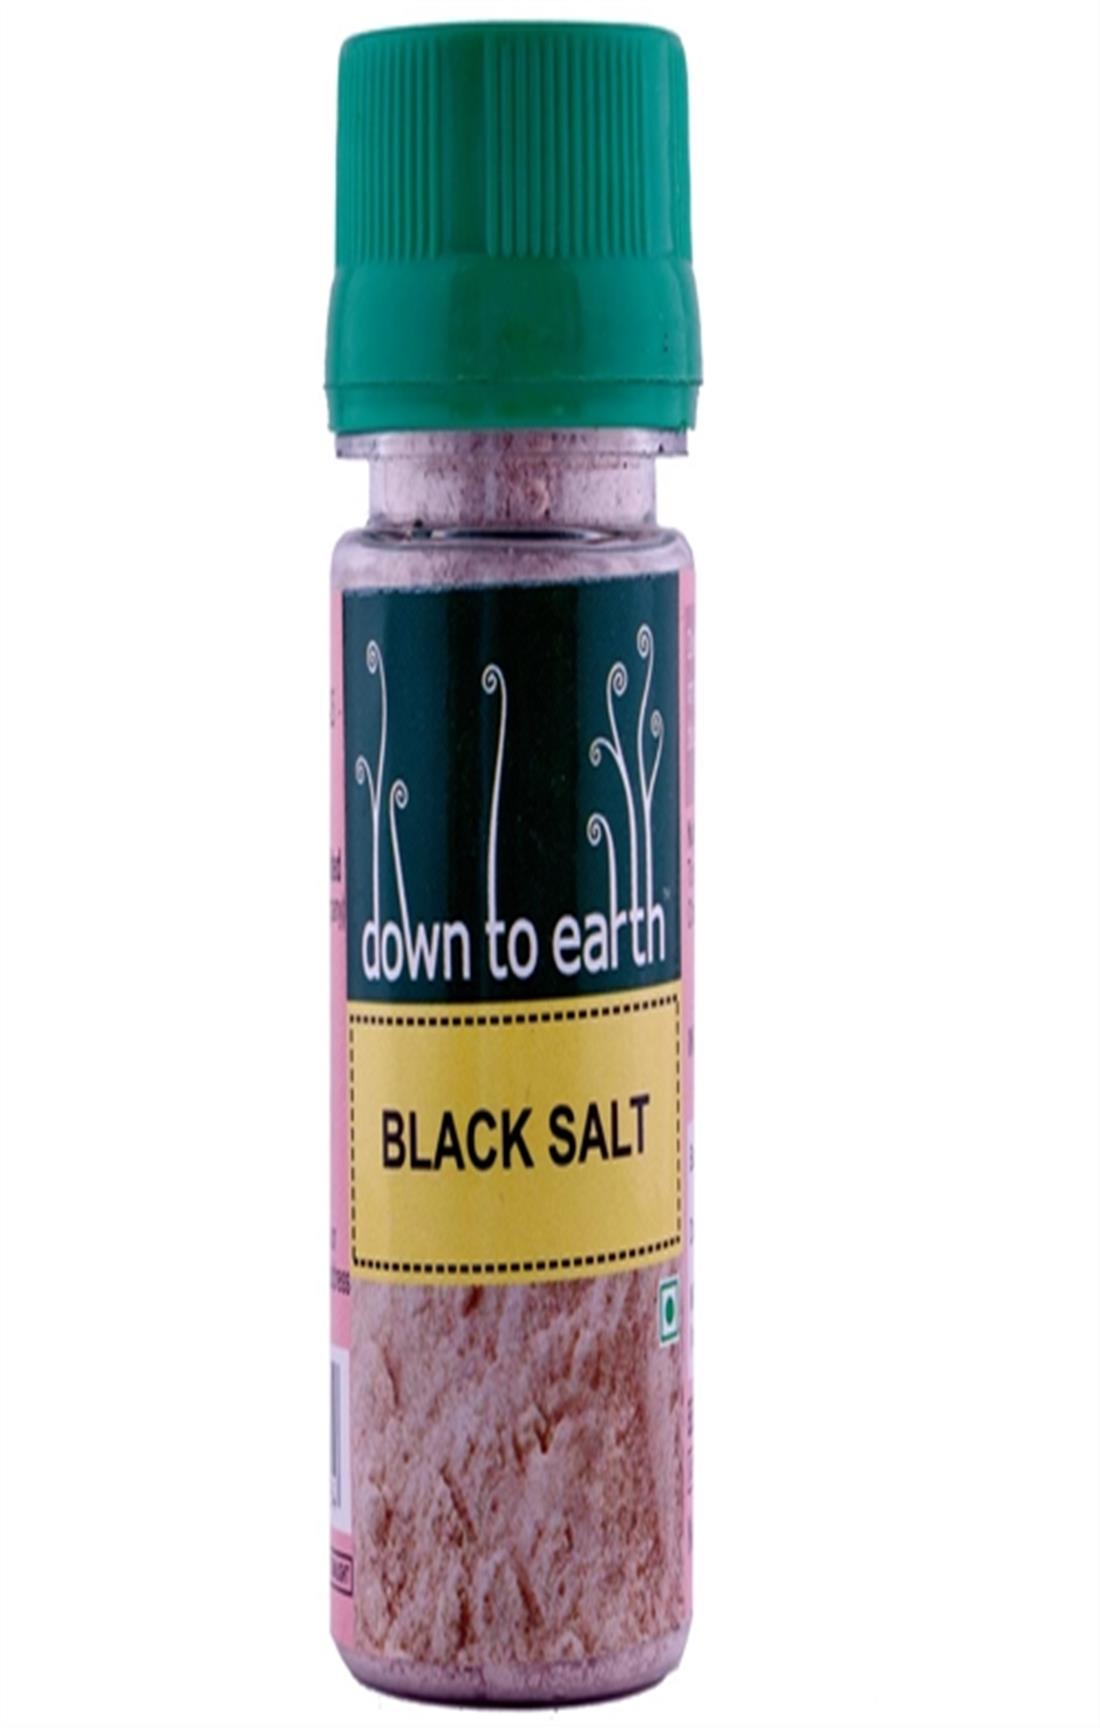 BLACK SALT(NATURAL)